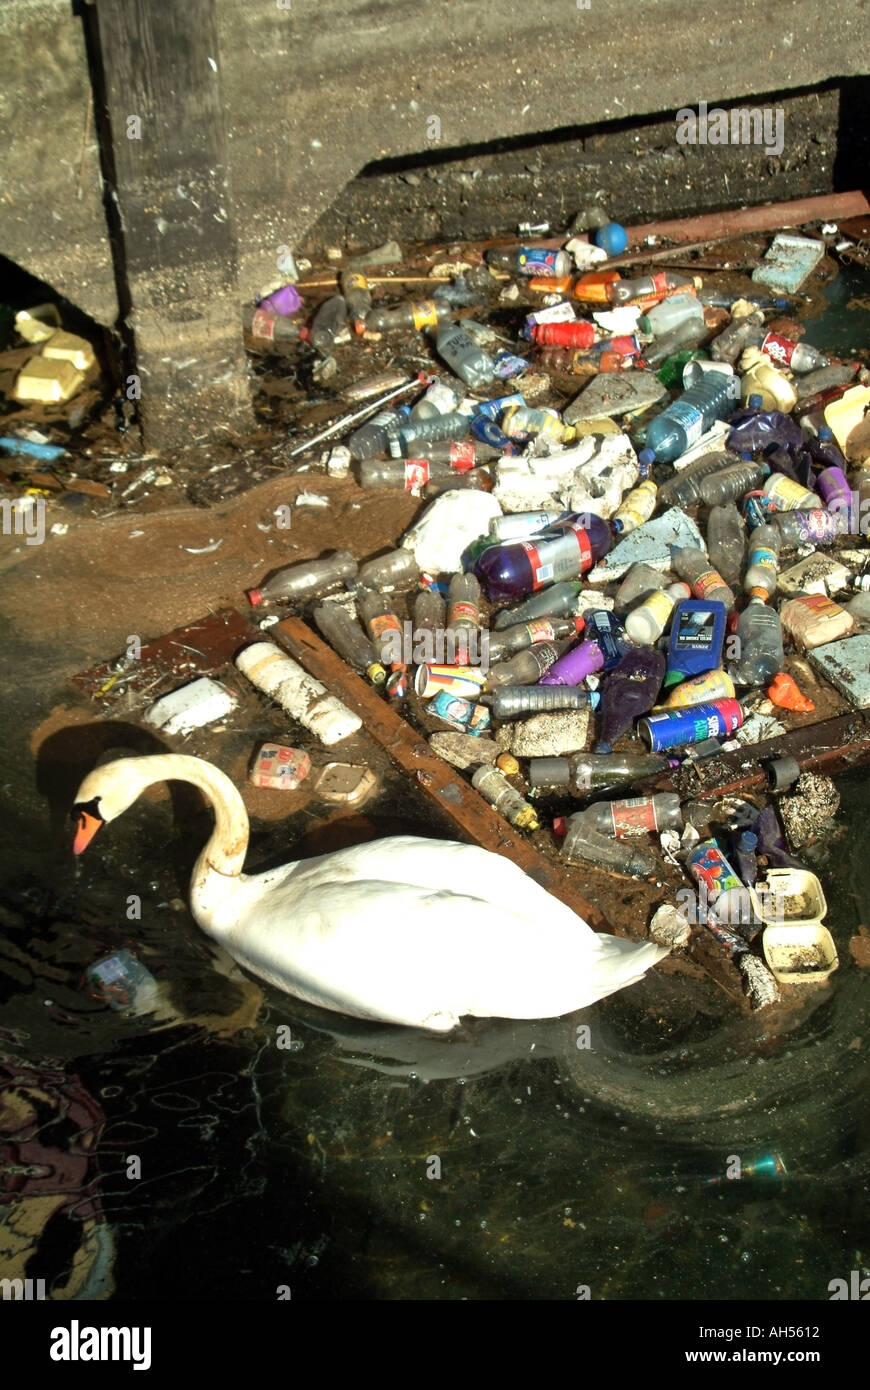 Swan versucht, zwischen der Verschmutzung durch Abfallmüll im kontaminierten Fluss Orwell Dock Water Ipswich Suffolk East Anglia England zu schwimmen Stockfoto